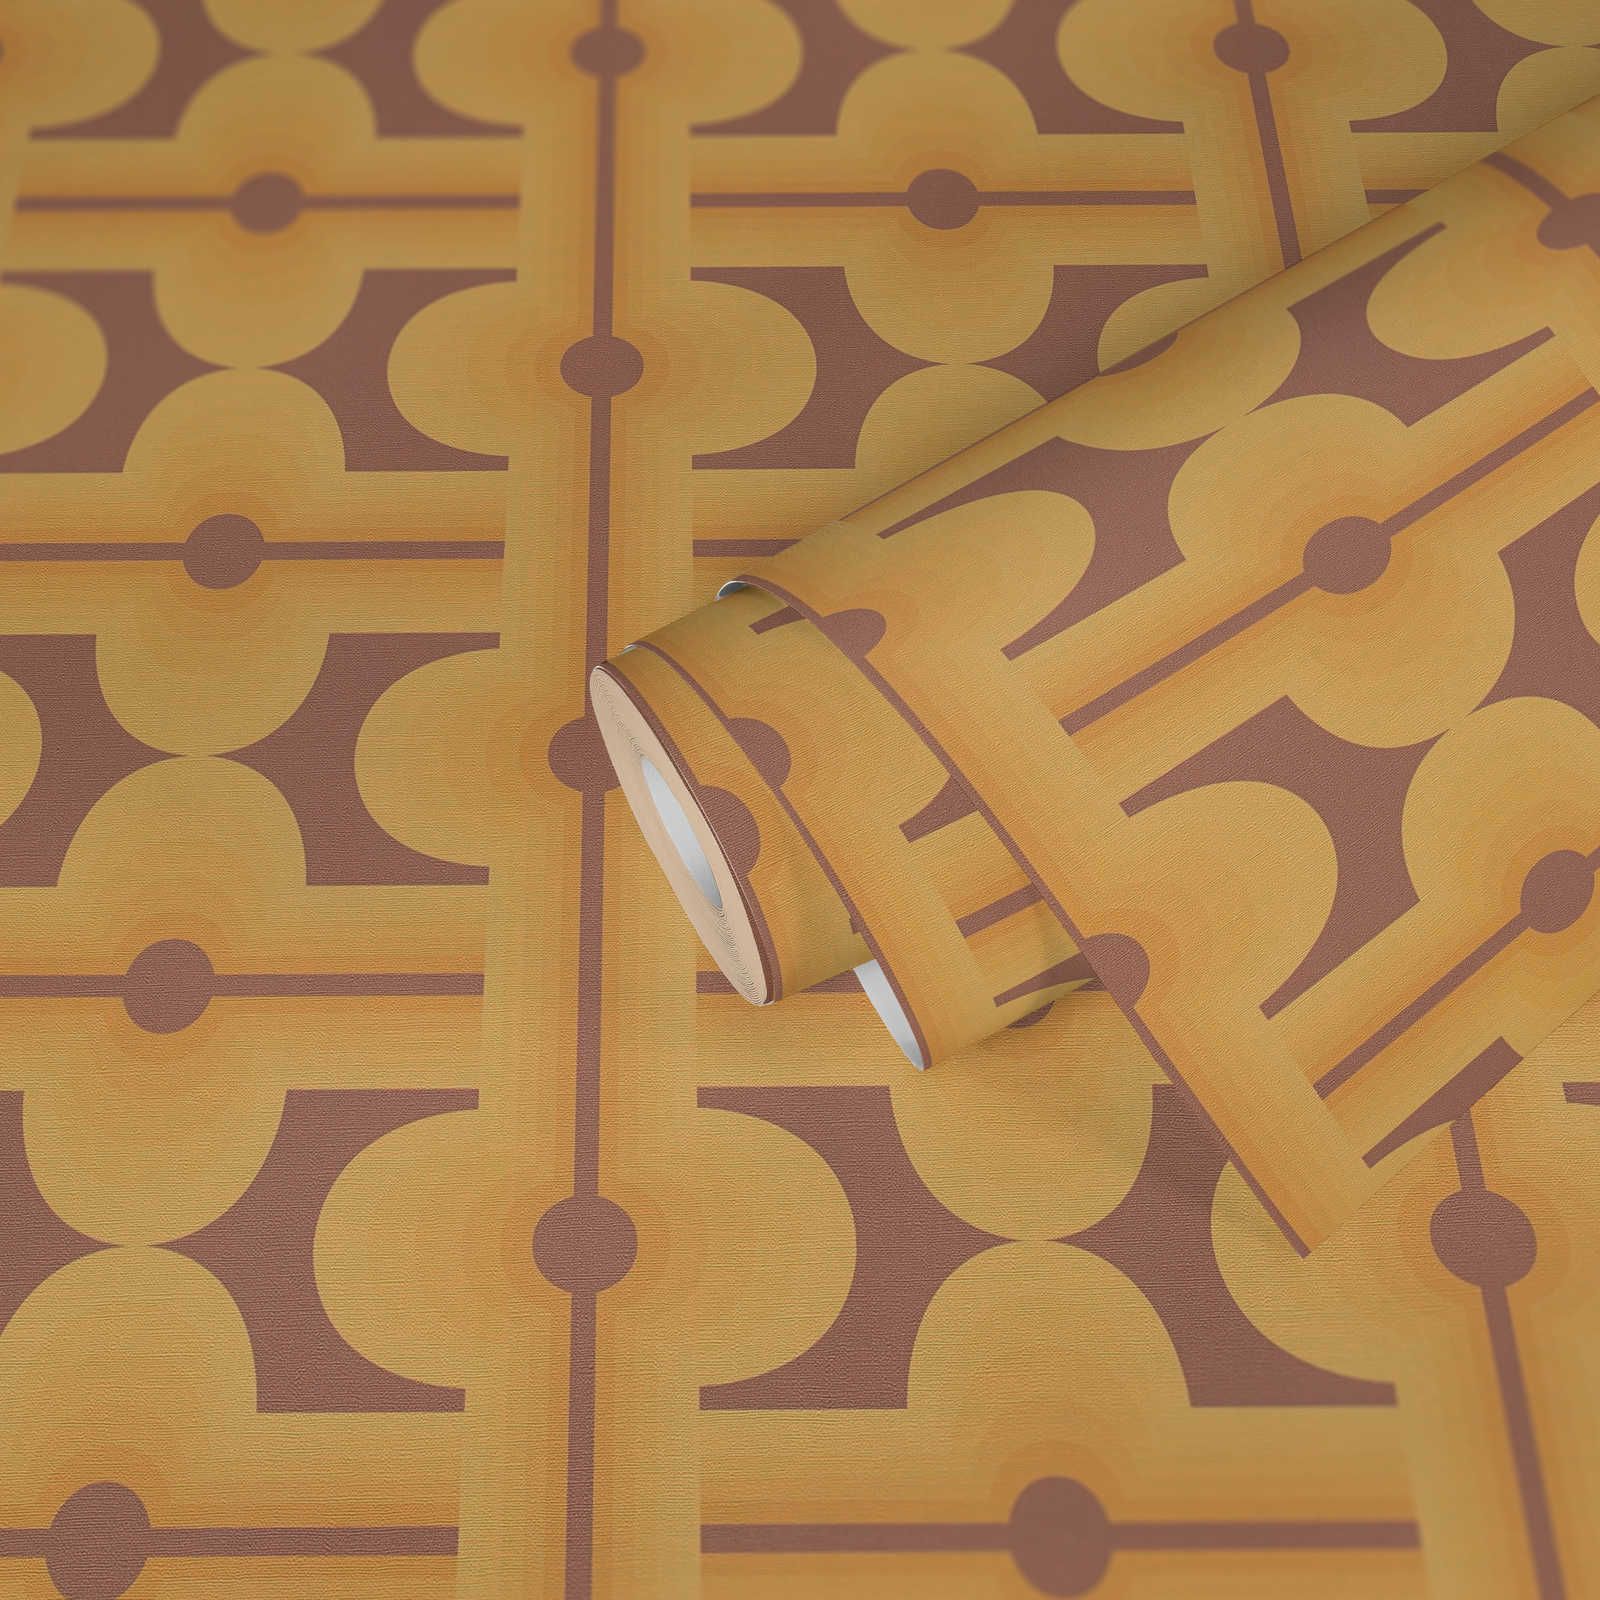             Abstracte patronen op jaren 70 vliesbehang in warme kleuren - bruin, geel, oranje
        